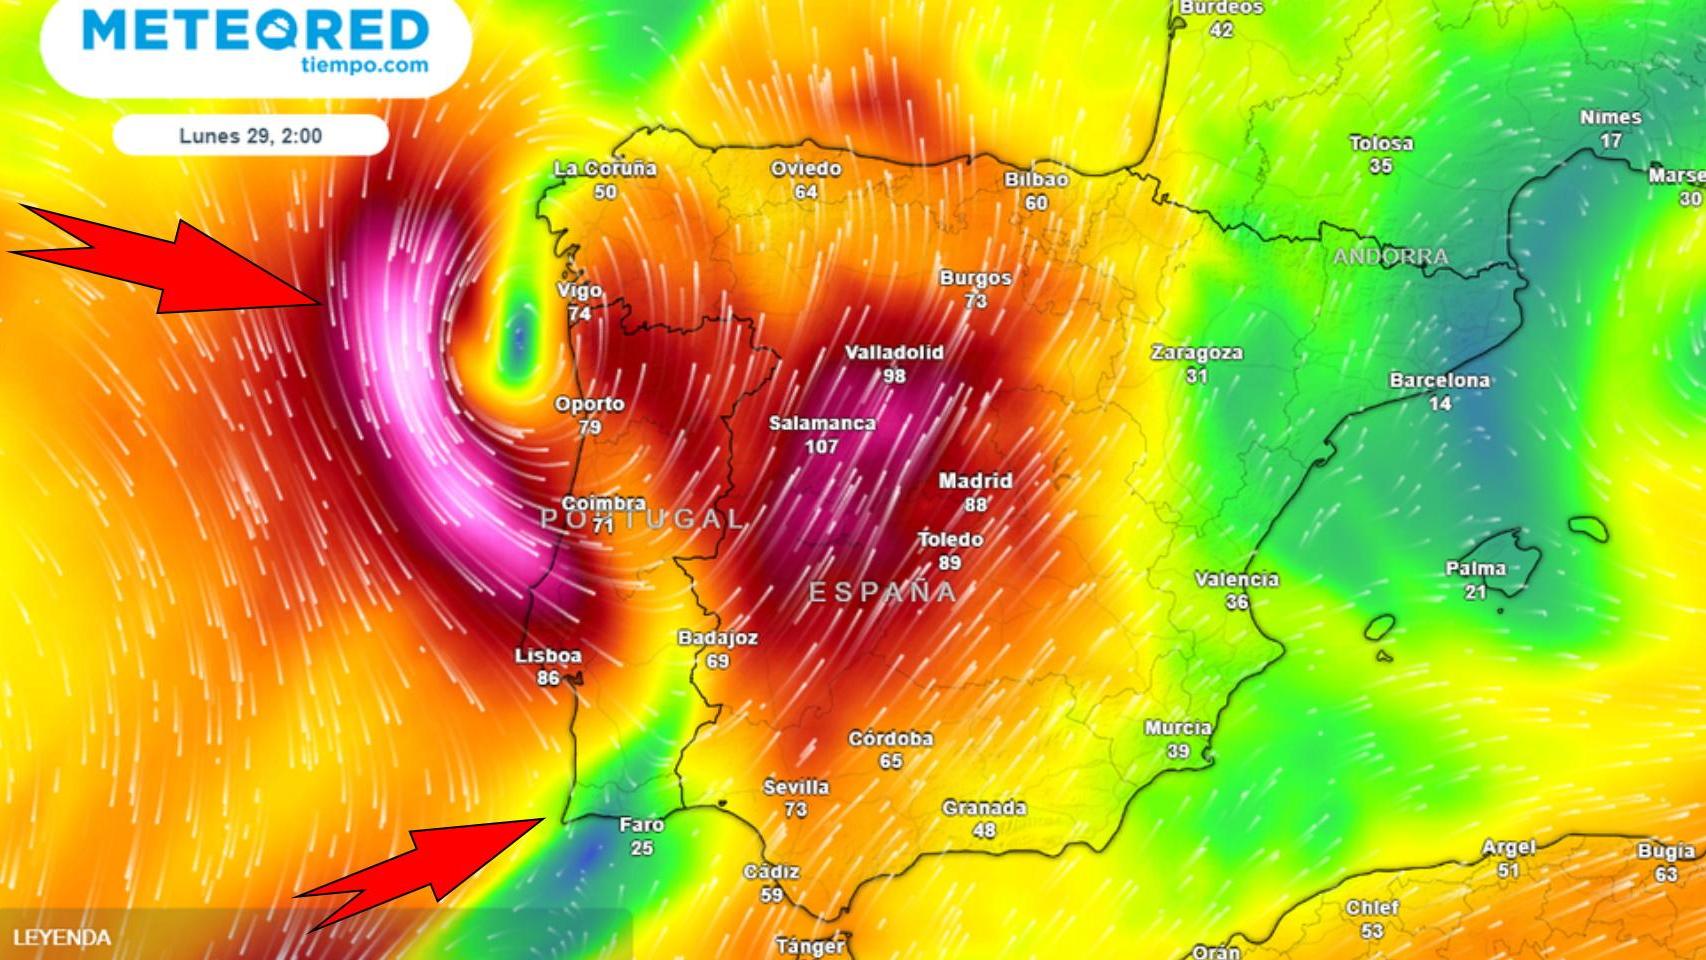 Llegan fuertes tormentas y reventones cálidos en las próximas horas a España: Aemet avisa a esta zonas